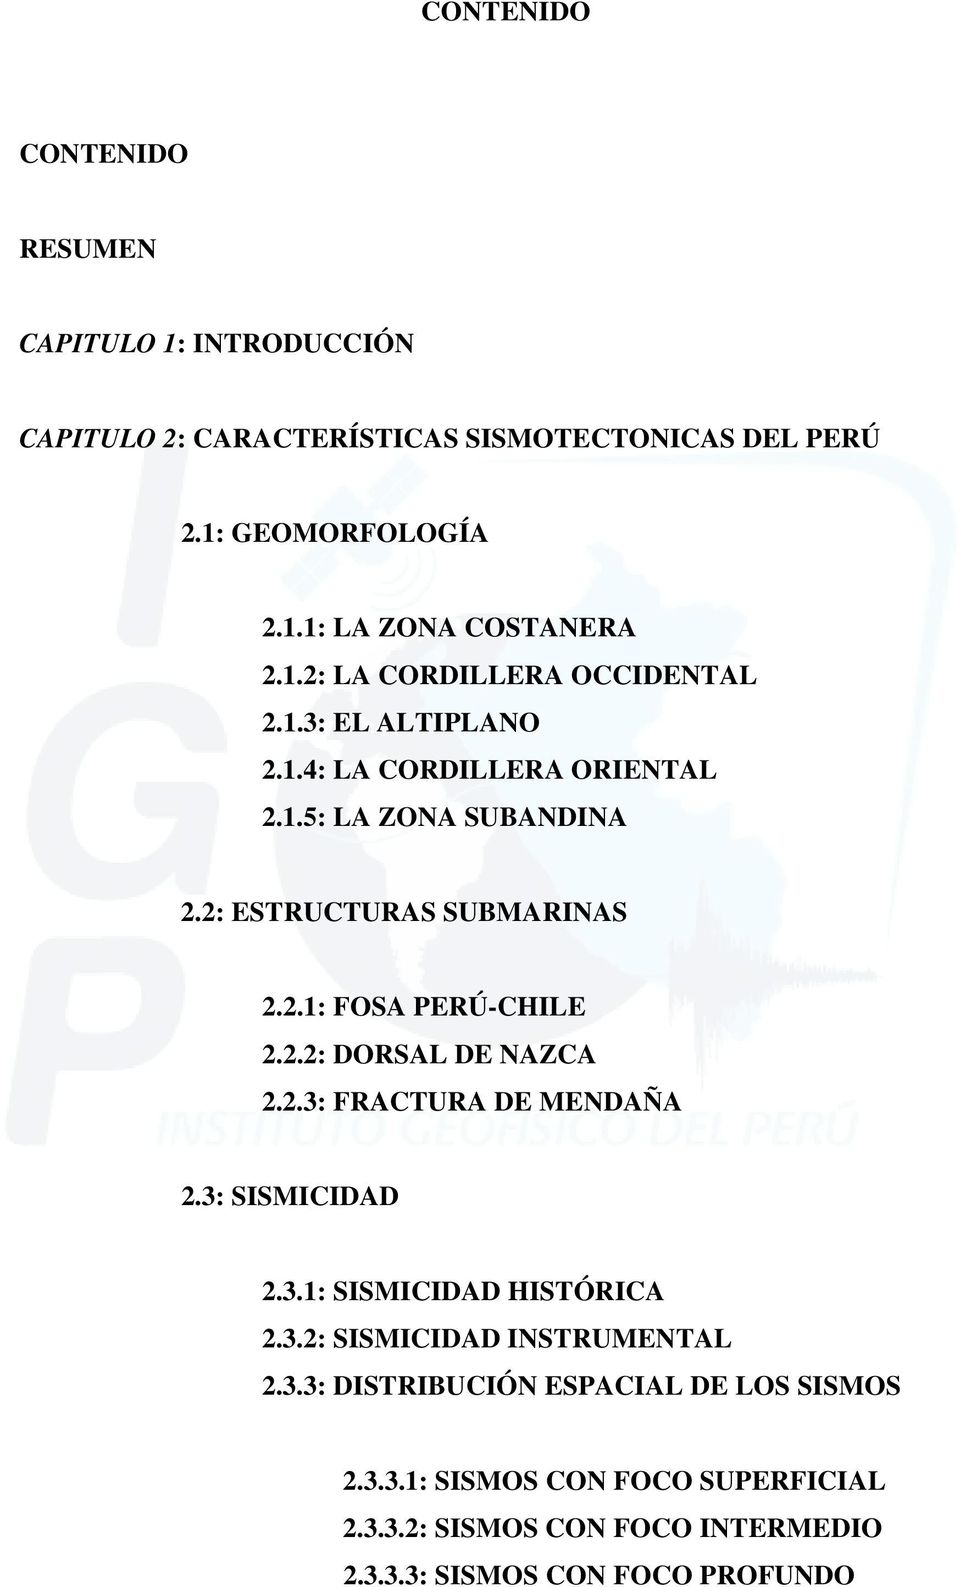 2.2: DORSAL DE NAZCA 2.2.3: FRACTURA DE MENDAÑA 2.3: SISMICIDAD 2.3.1: SISMICIDAD HISTÓRICA 2.3.2: SISMICIDAD INSTRUMENTAL 2.3.3: DISTRIBUCIÓN ESPACIAL DE LOS SISMOS 2.